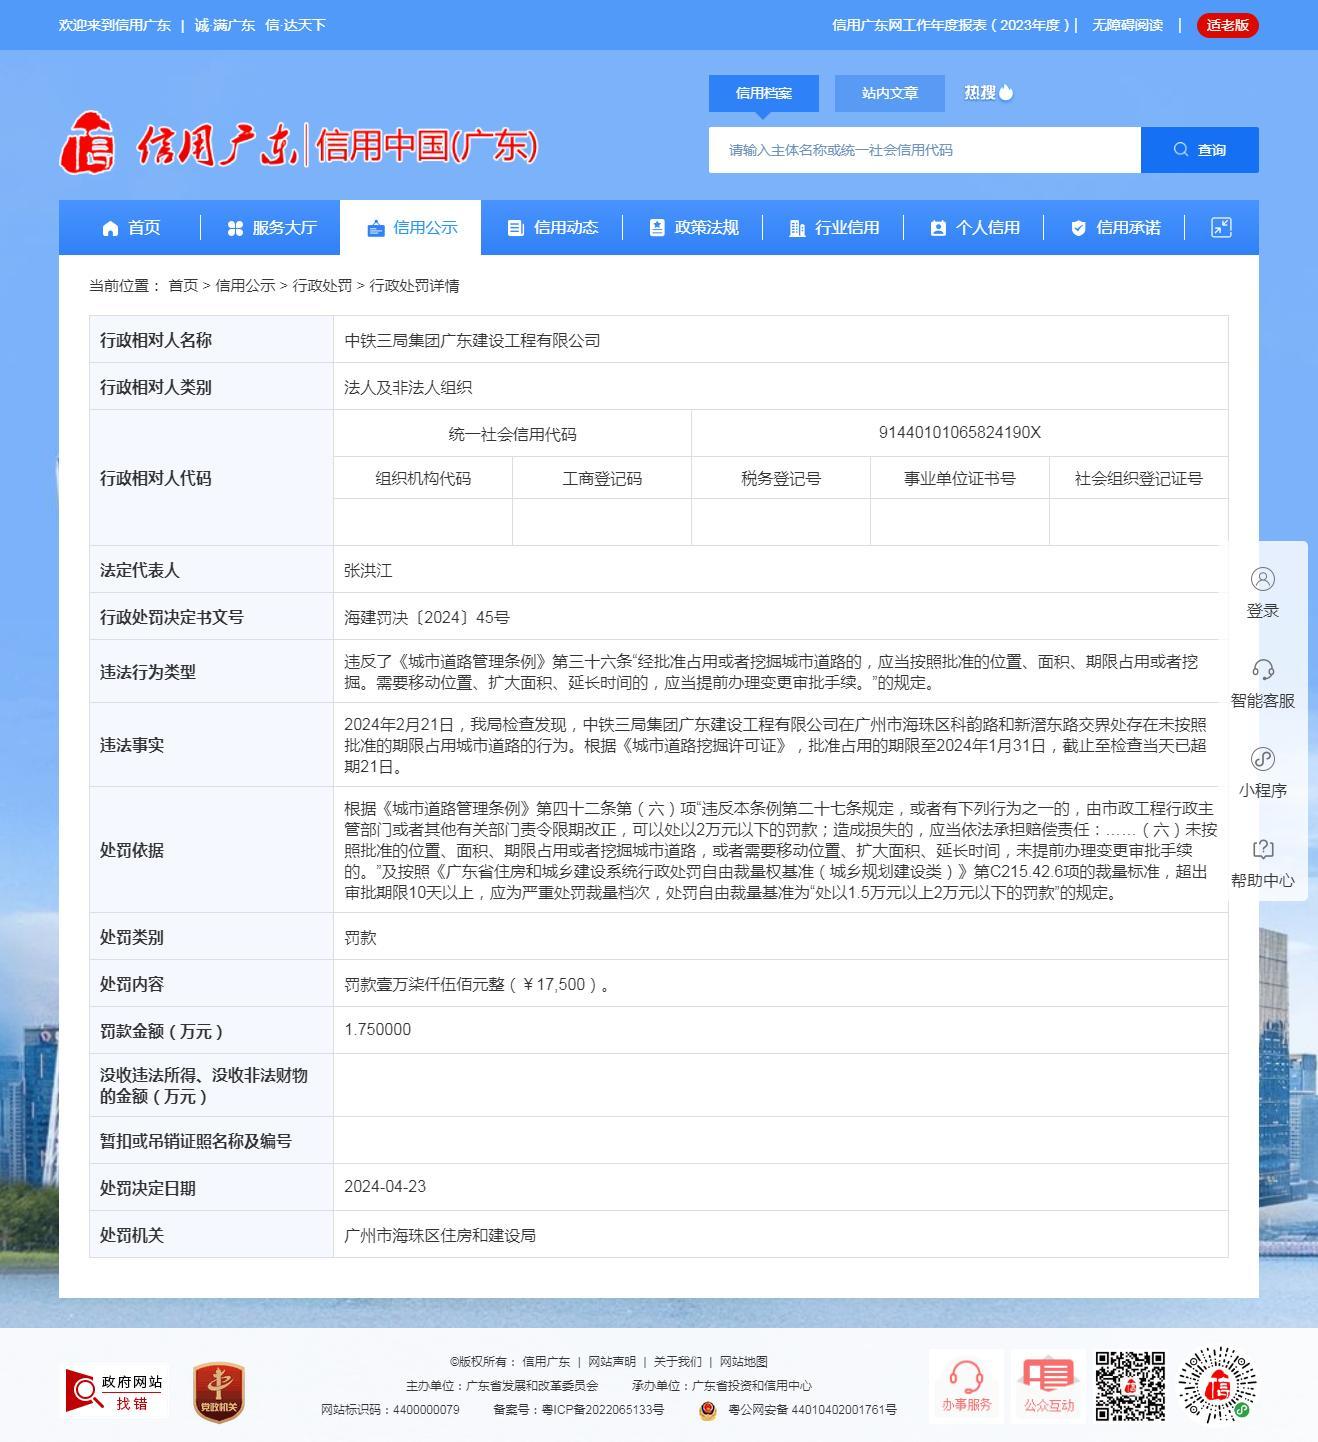 中铁三局集团广东建设工程有限公司因未按照批准的期限占用城市道路被罚1.75万元